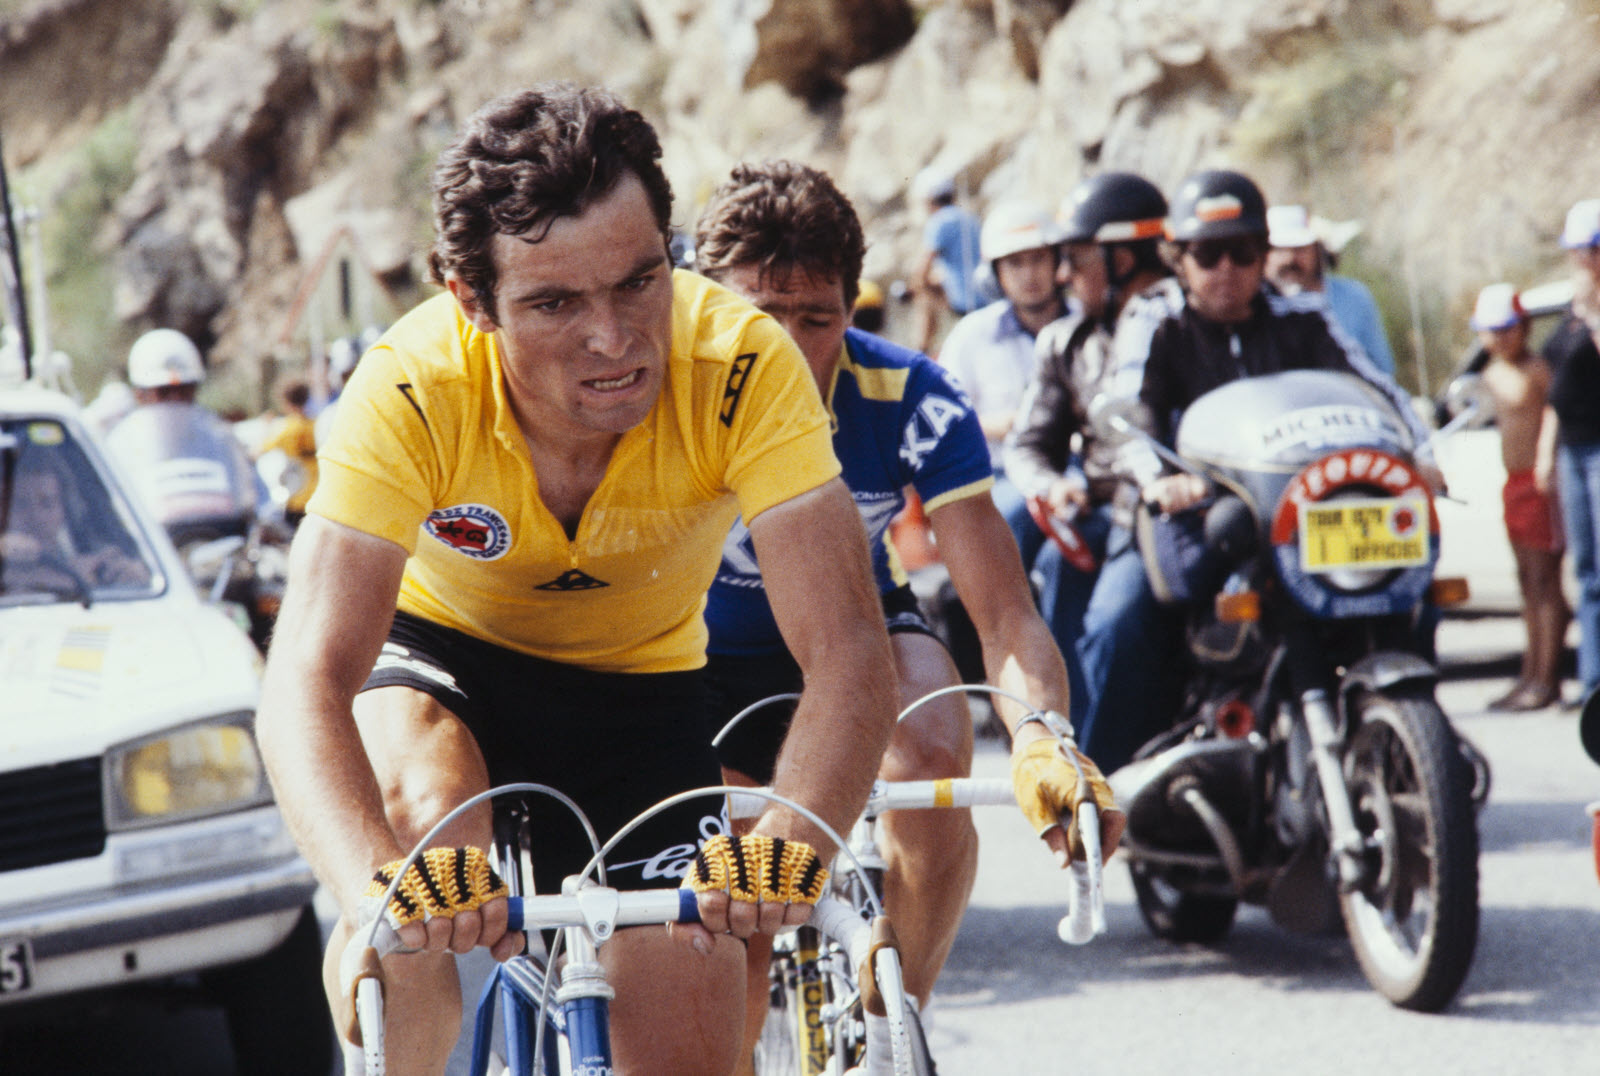 bernard-hinault-avec-le-maillot-jaune-lors-du-tour-de-france-en-1979-photo-afp-1564149074.jpg